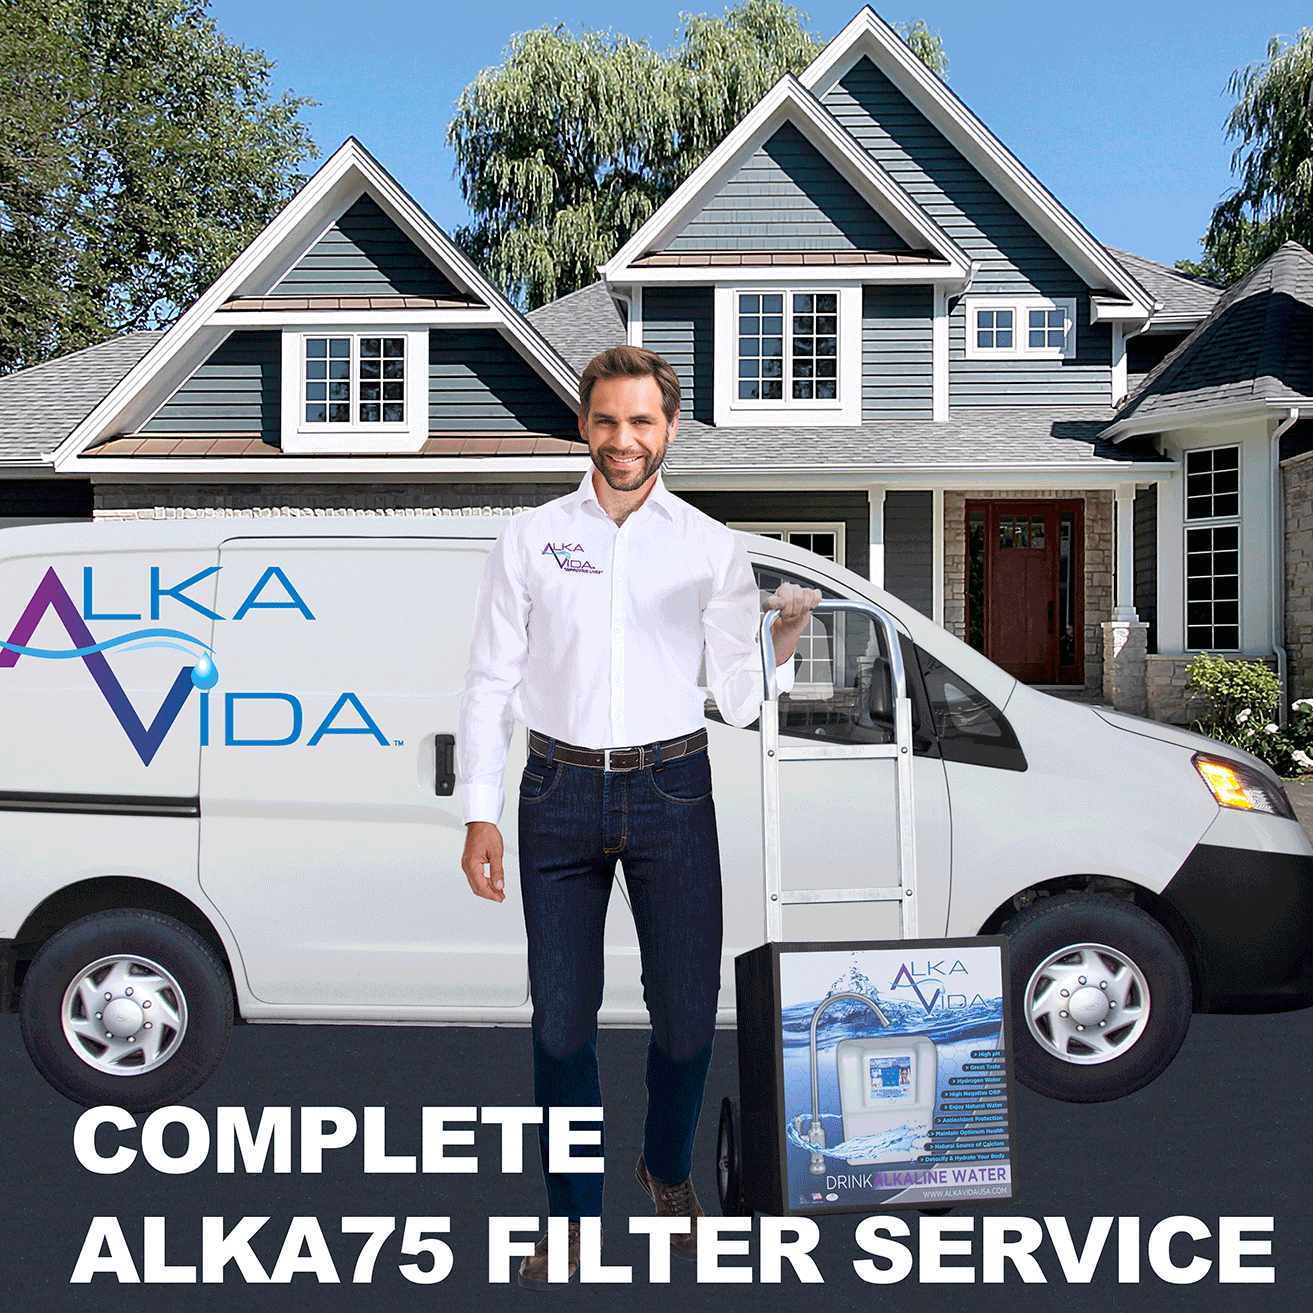 Complete Filter Service (Las Vegas)